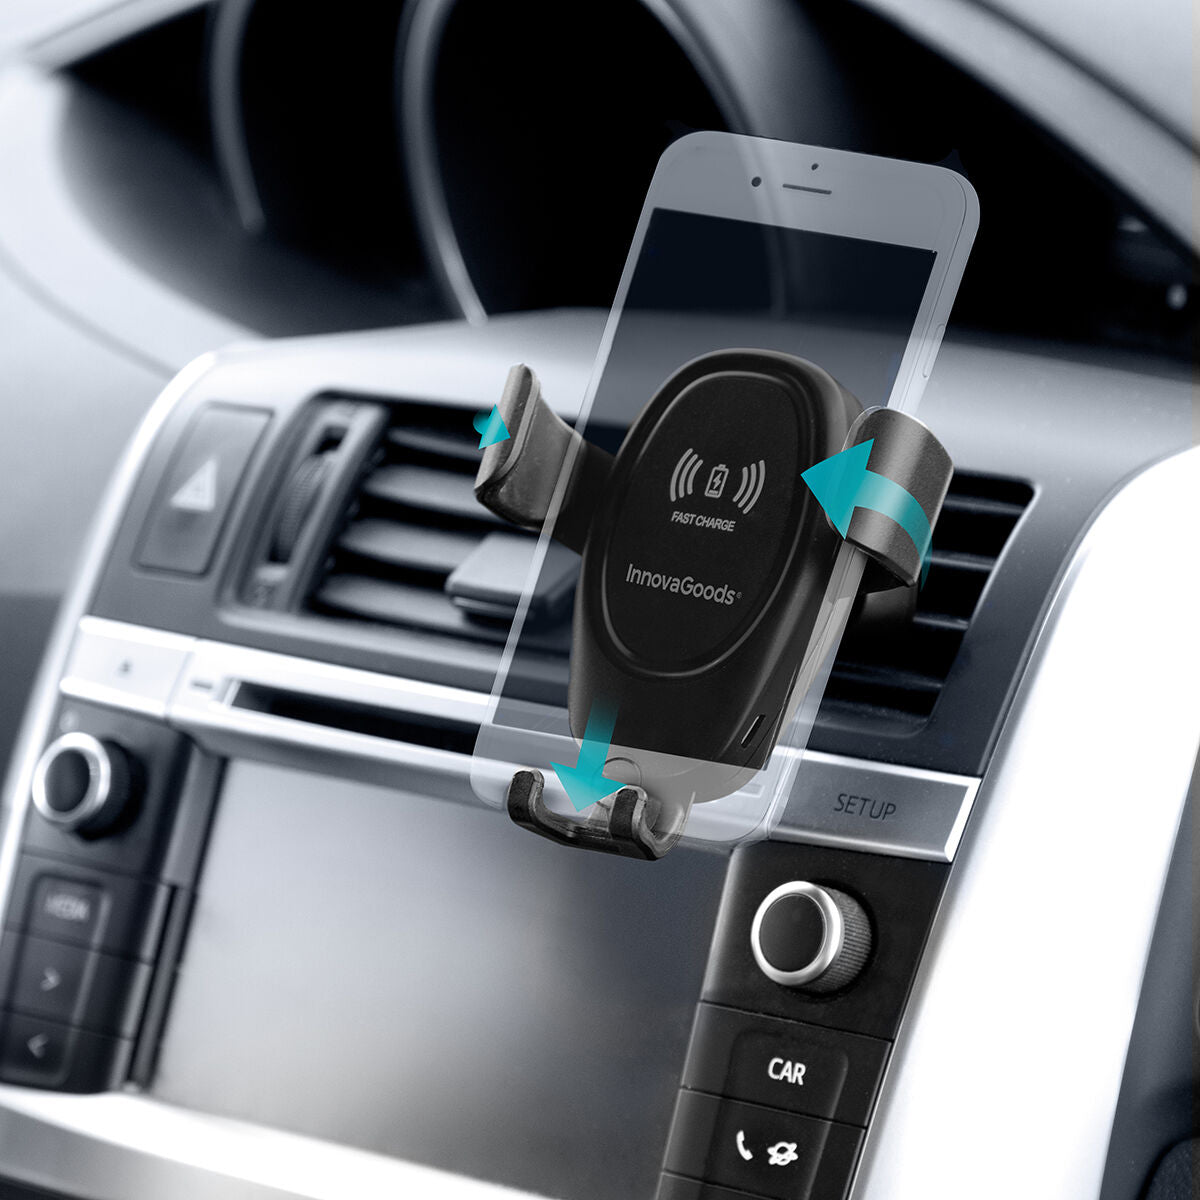 Handyhalterung mit kabellosem Ladegerät für Autos Wolder InnovaGoods - CA International 